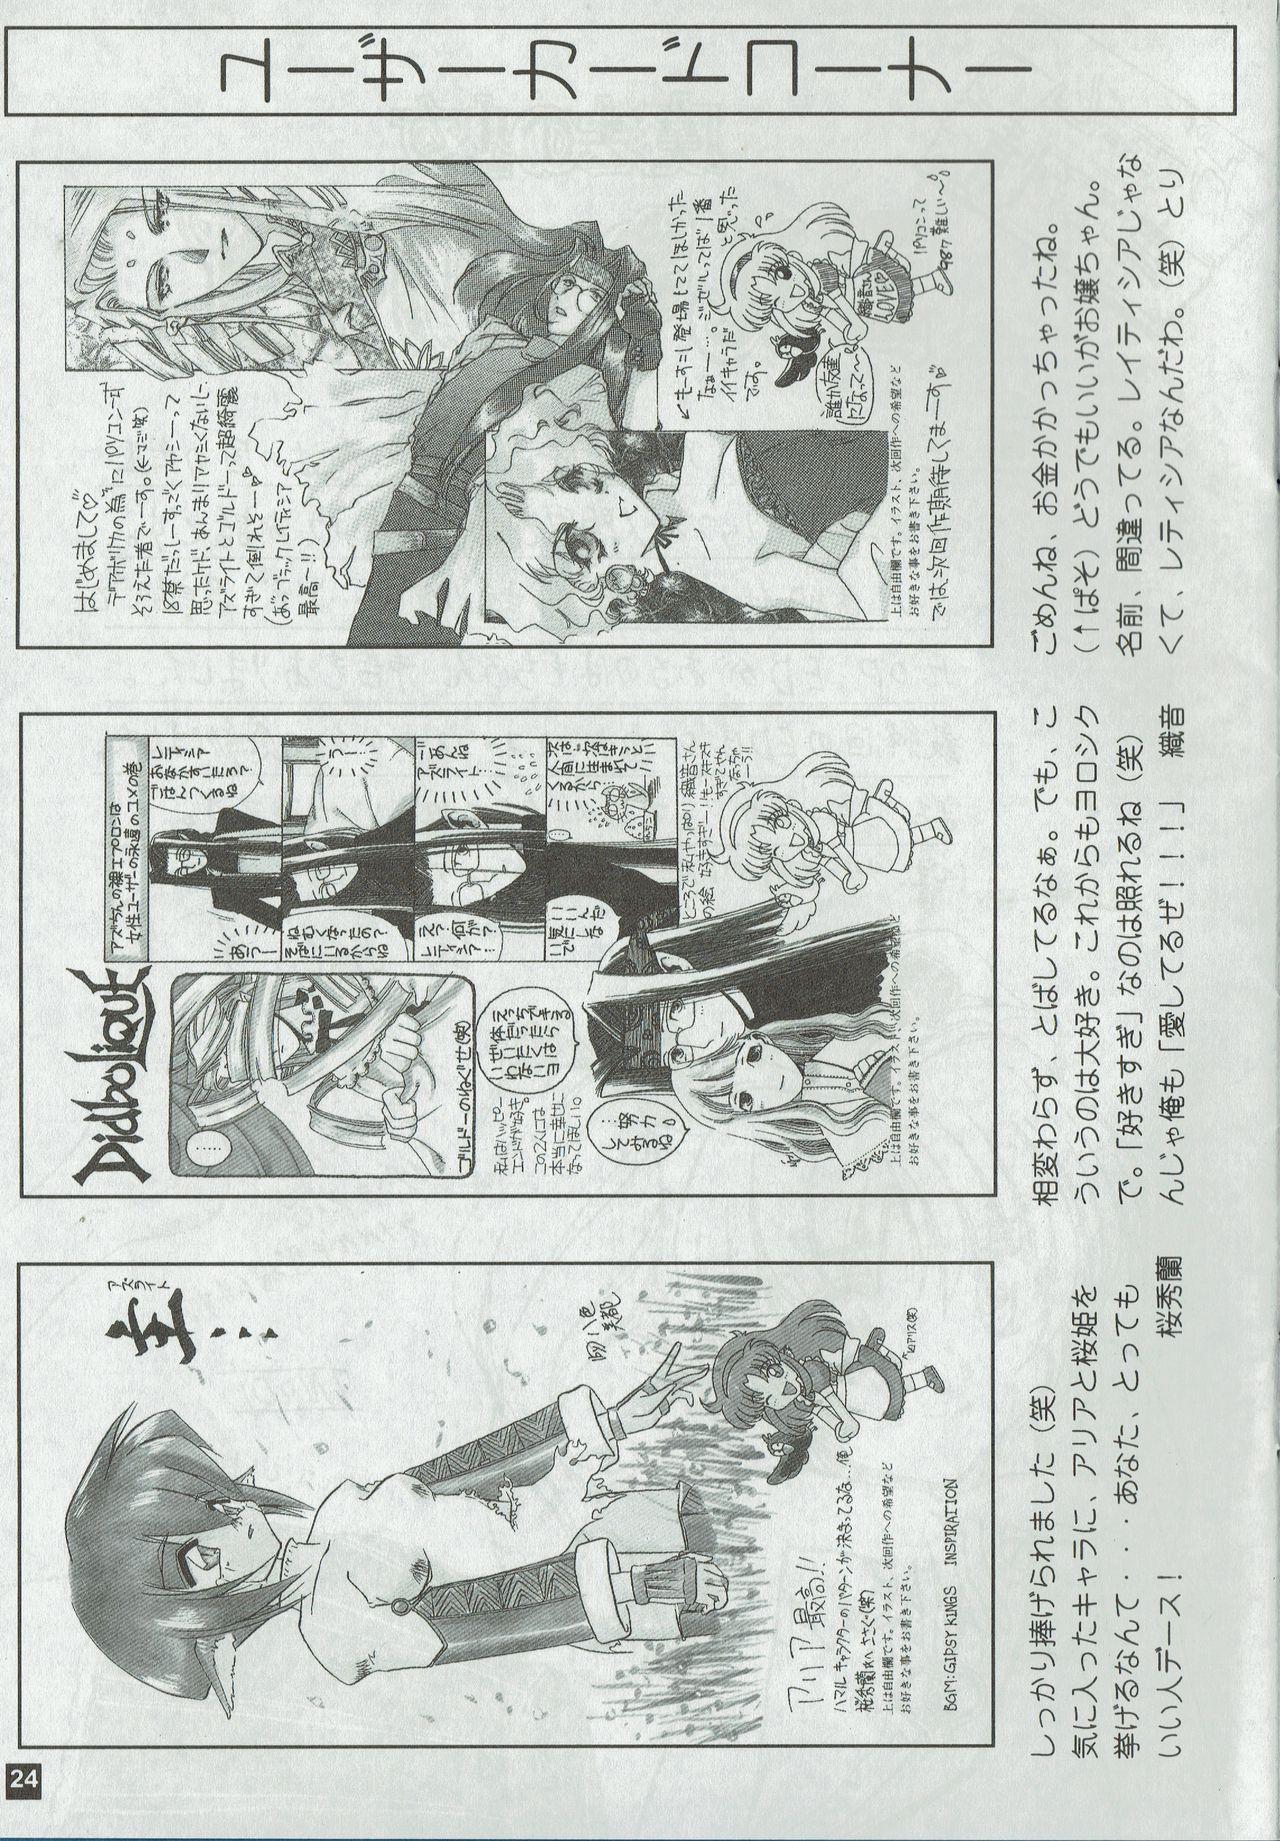 Arisu no Denchi Bakudan Vol. 01 23